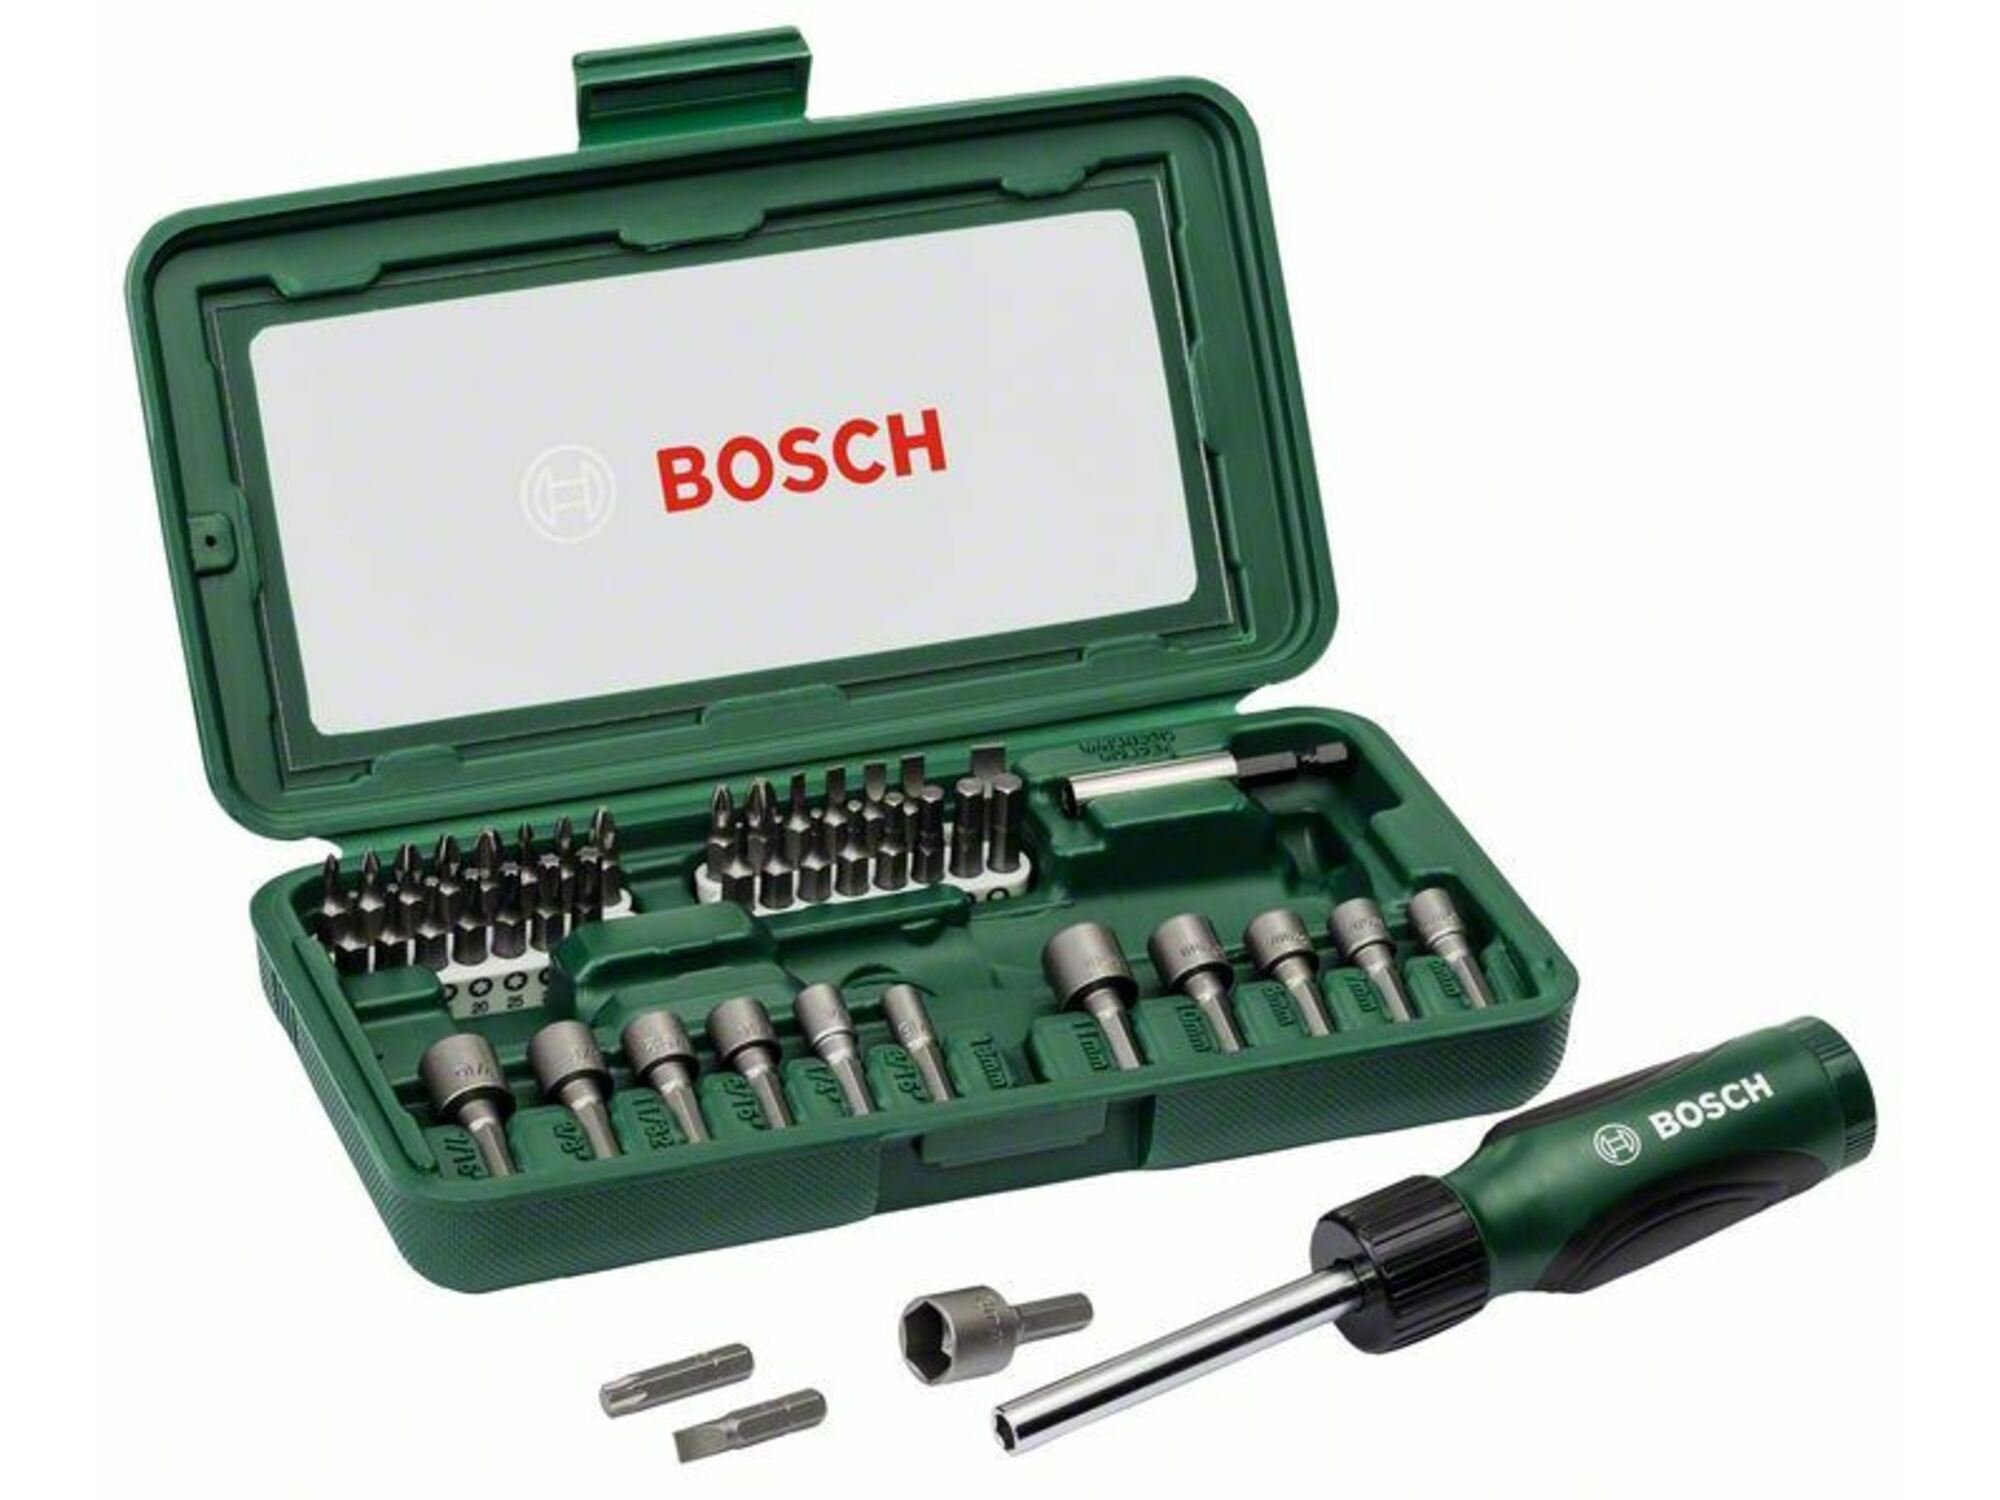 Bosch 246-delni set odvrtača 607019504